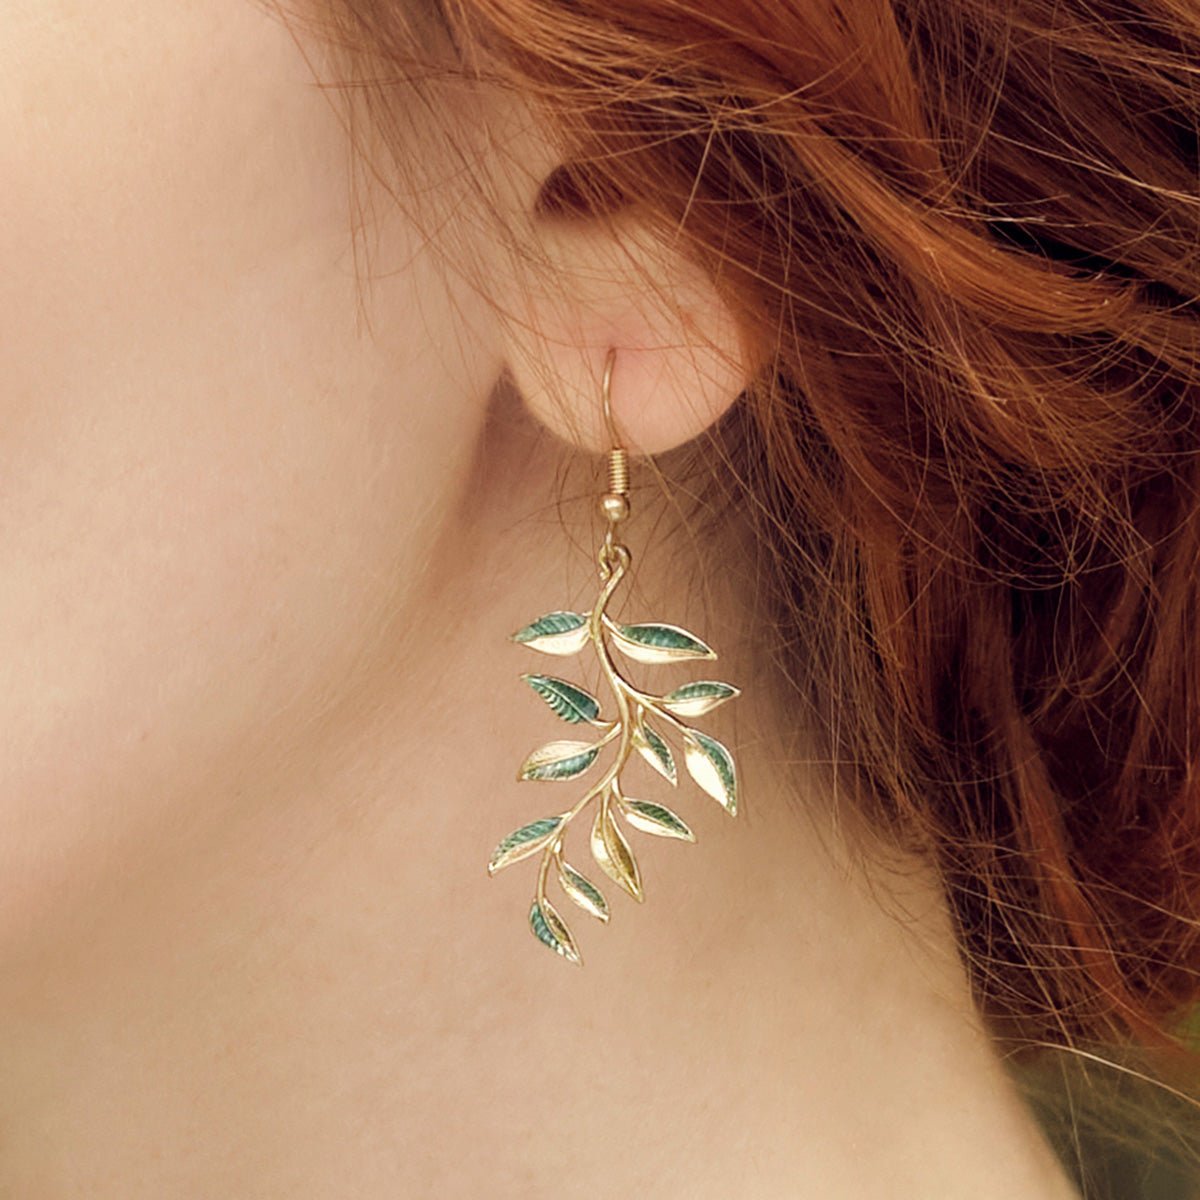 William Morris inspired leaf earrings